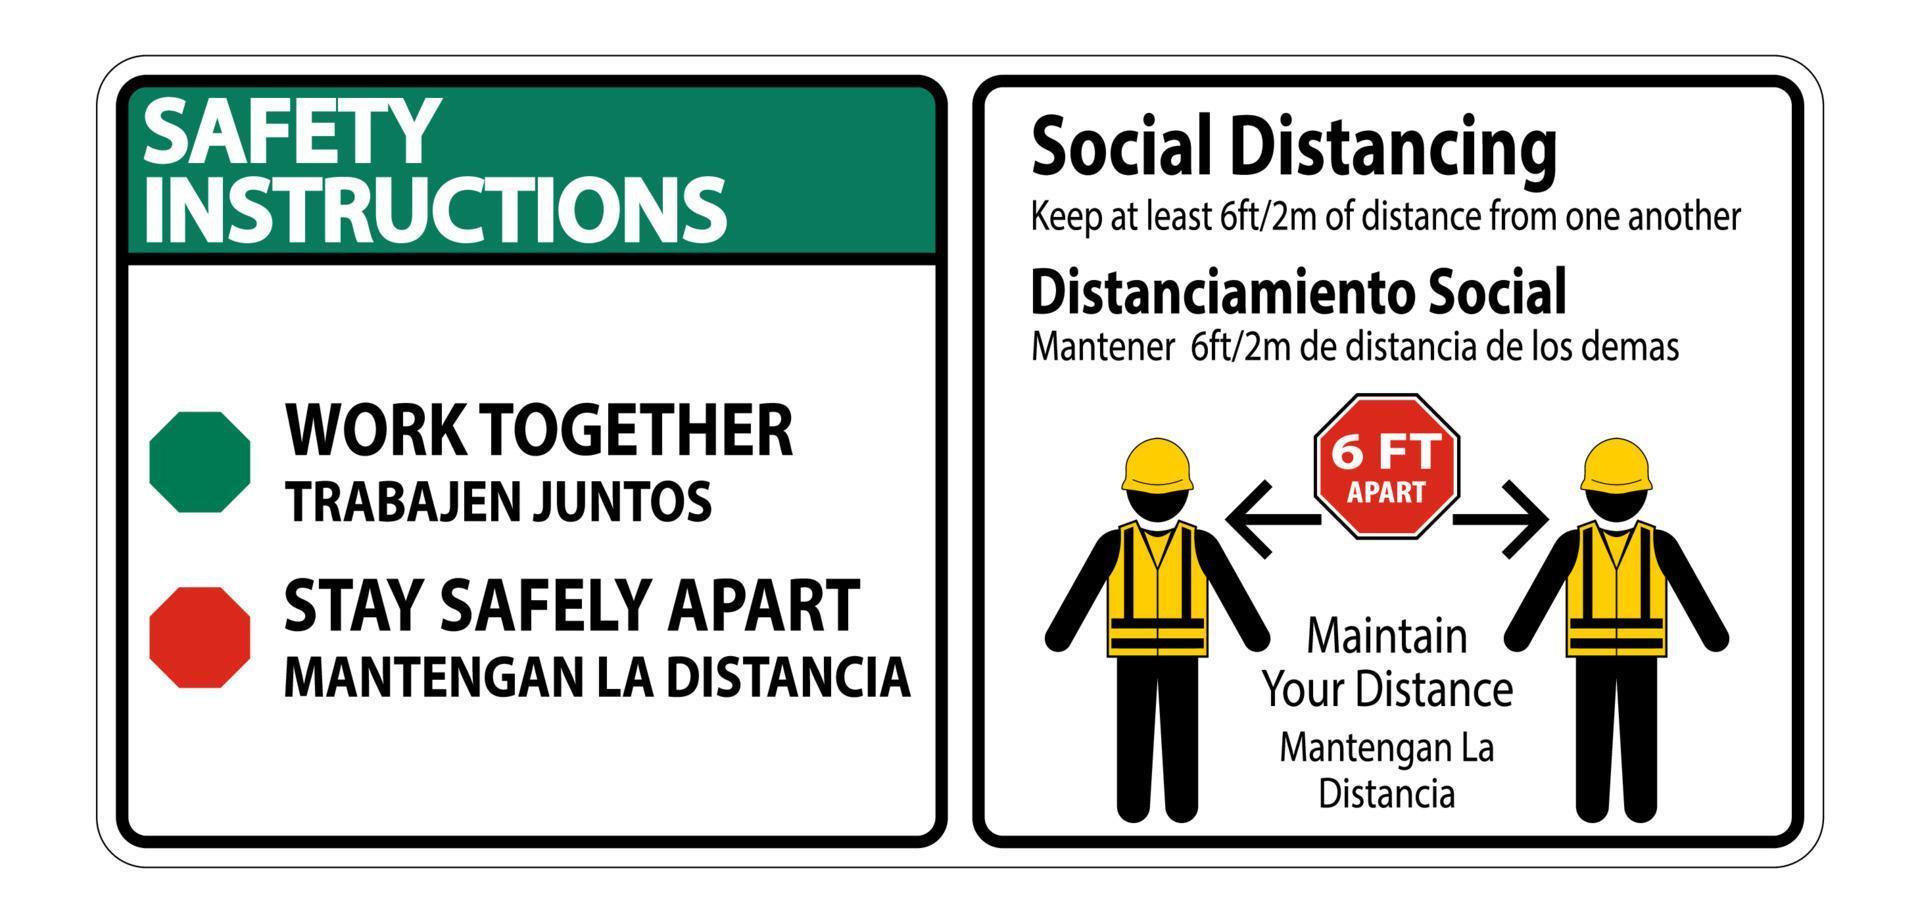 istruzioni di sicurezza bilingue segno costruzione distanza sociale isolato su sfondo bianco, illustrazione vettoriale eps.10